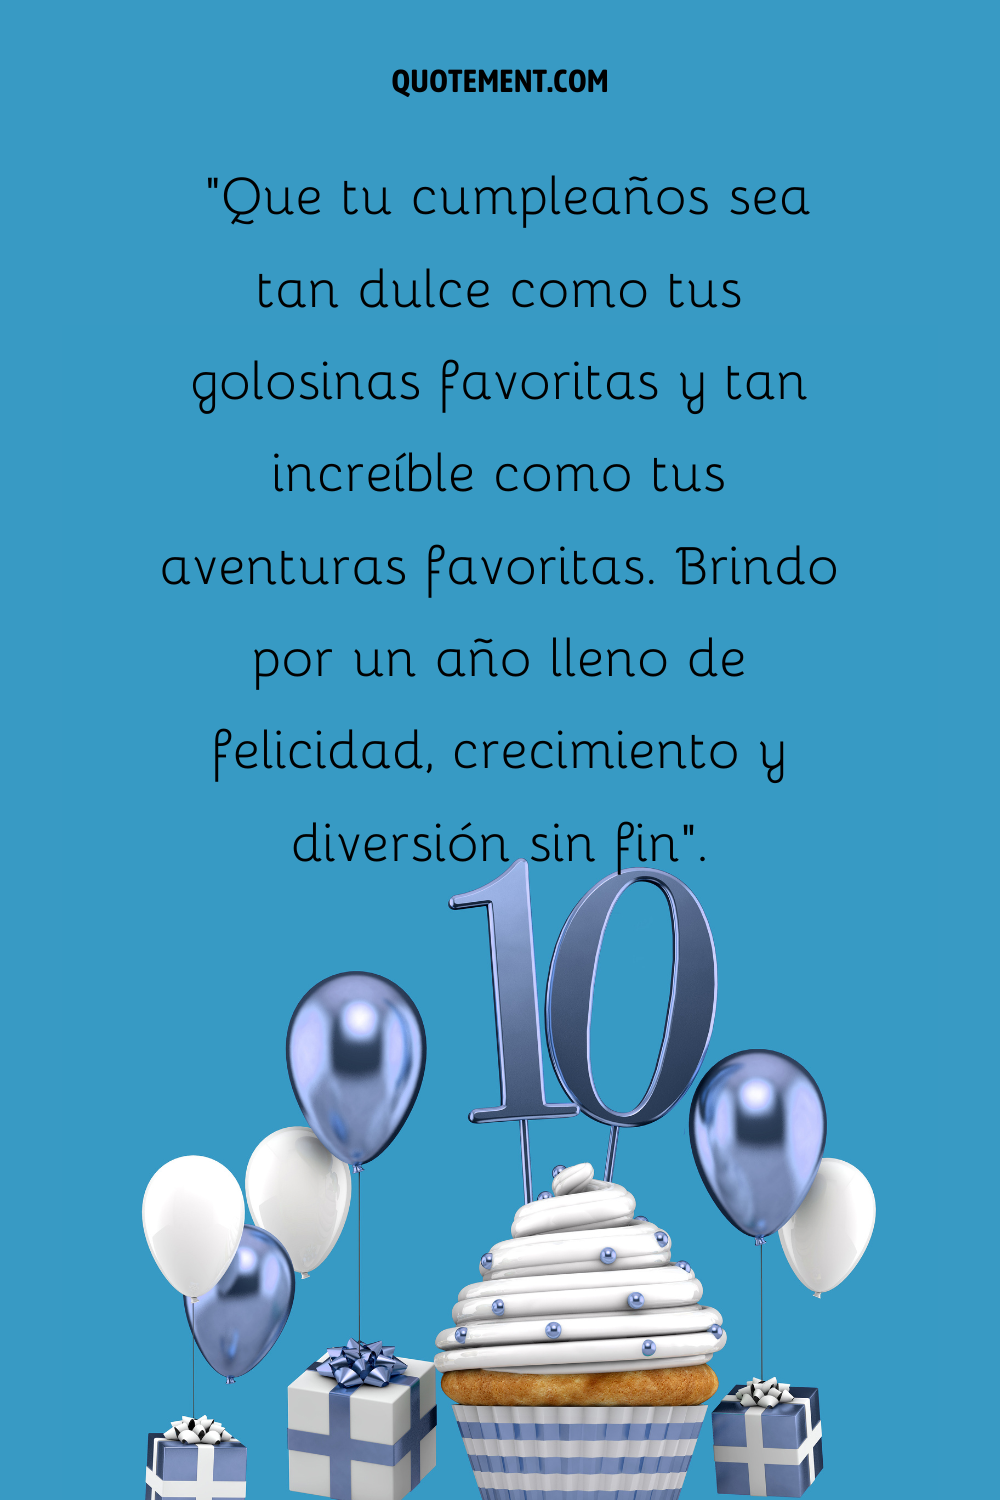 Un número 10 azul colocado sobre una magdalena con globos azules y blancos y regalos alrededor